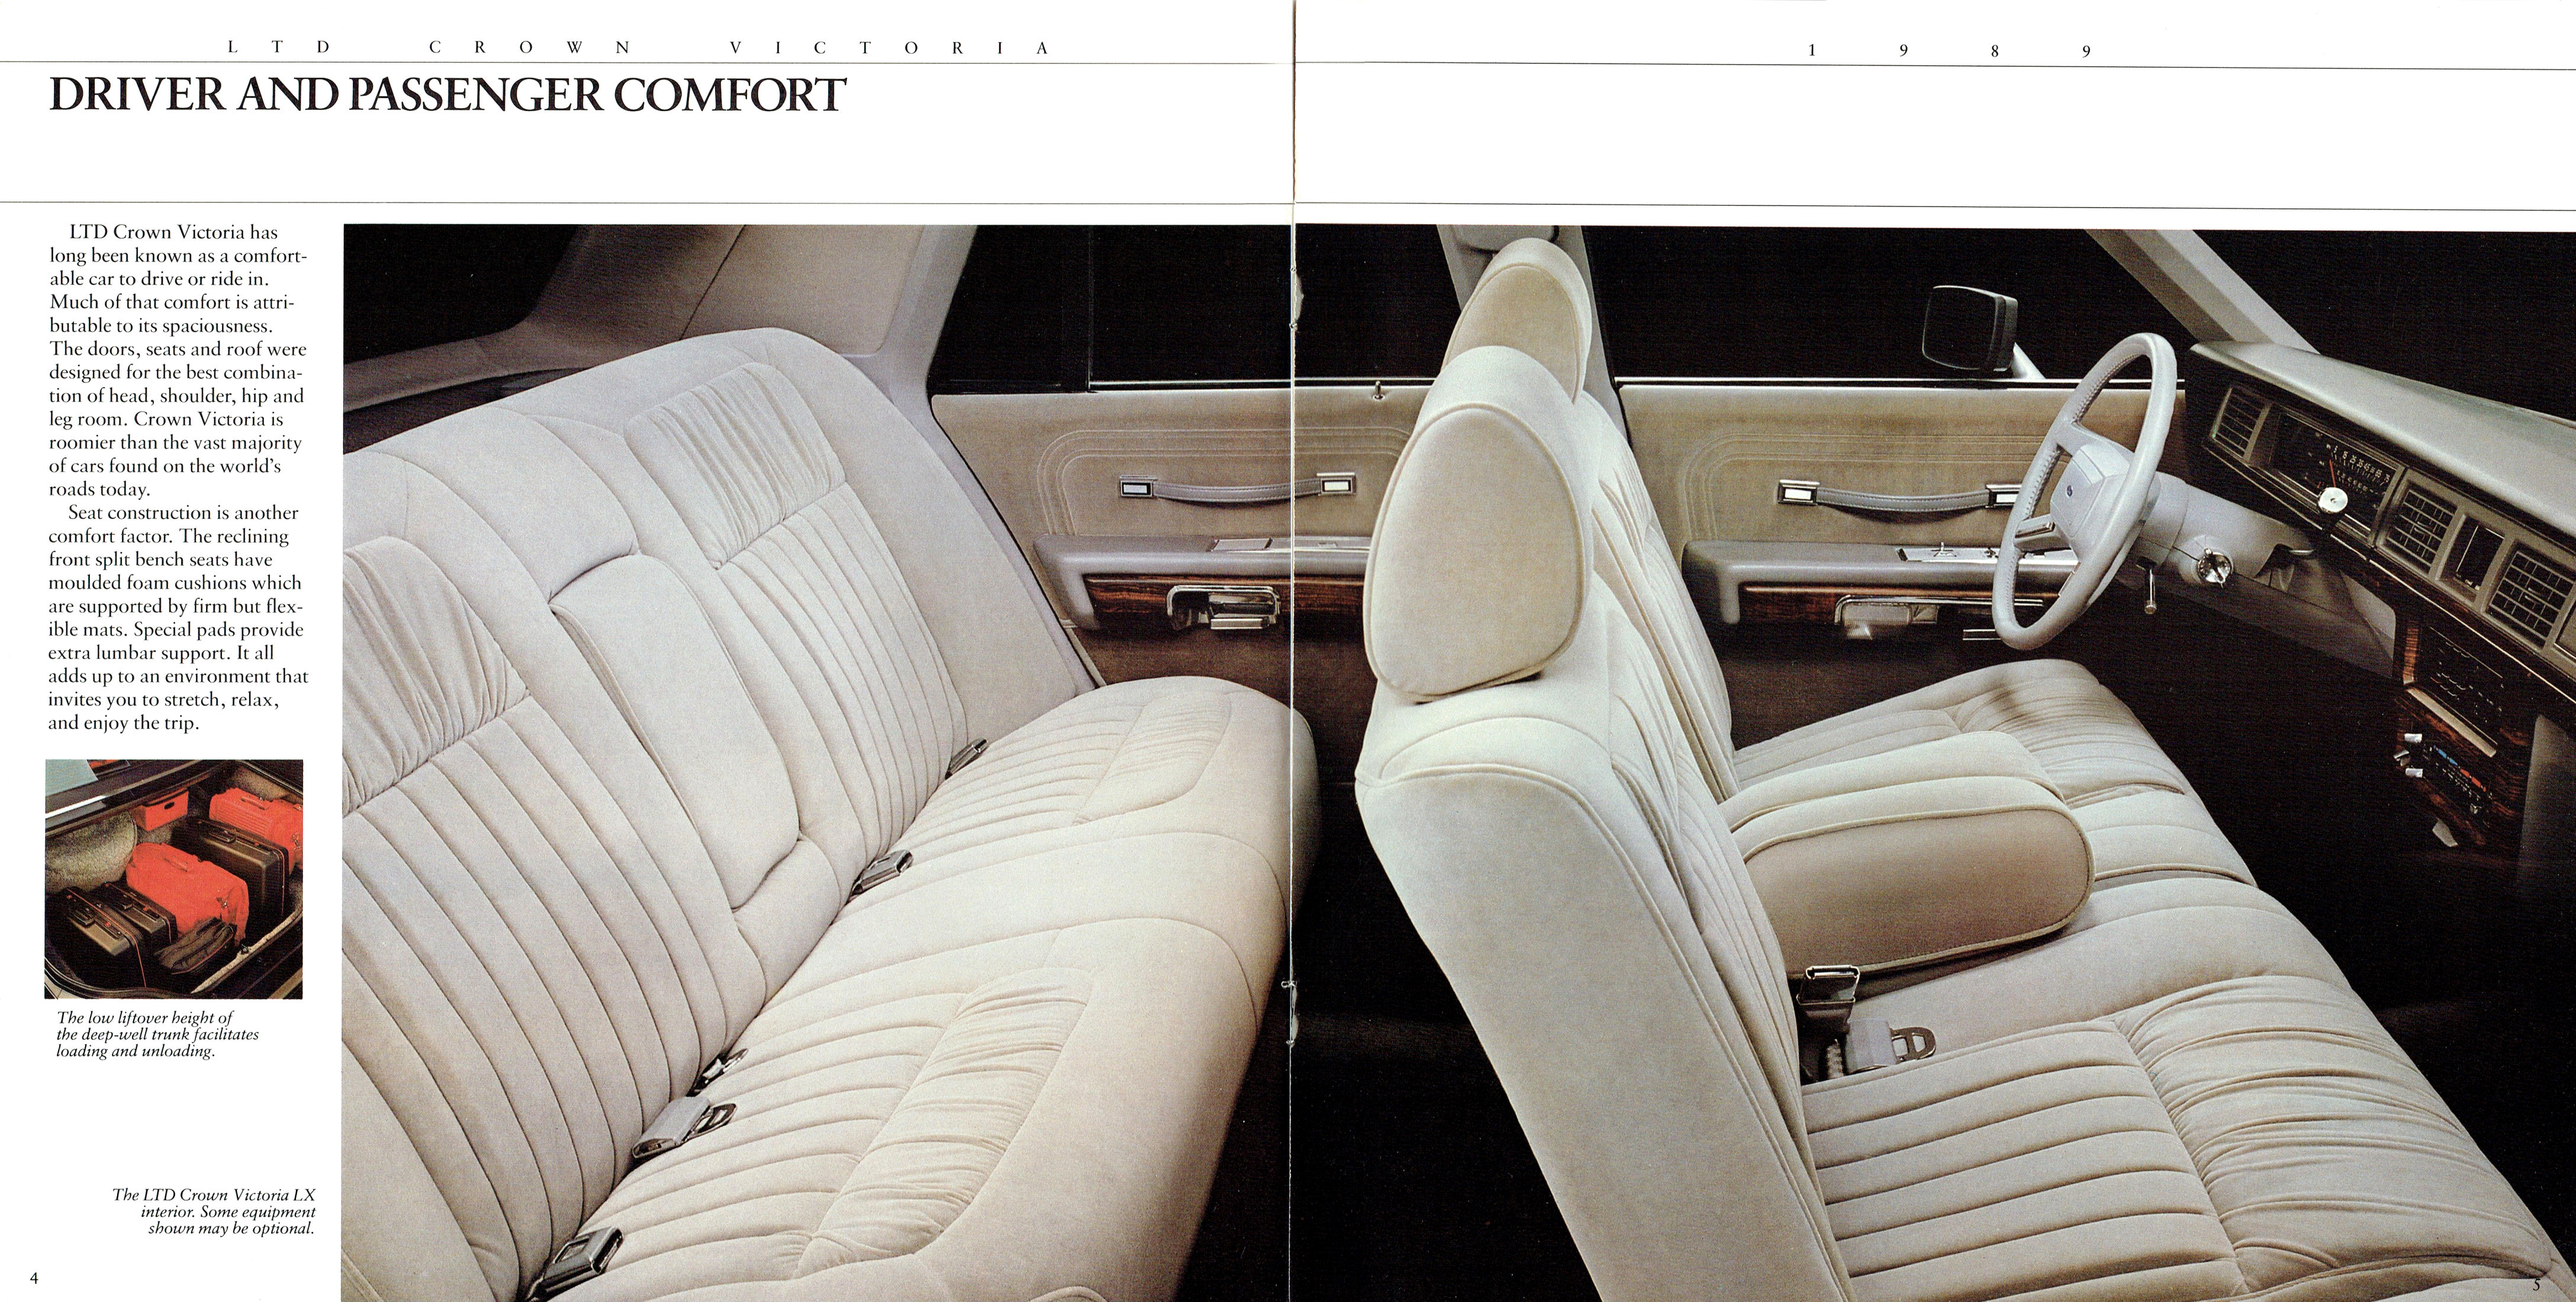 1989 Ford LTD Crown Victoria (Cdn)-04-05